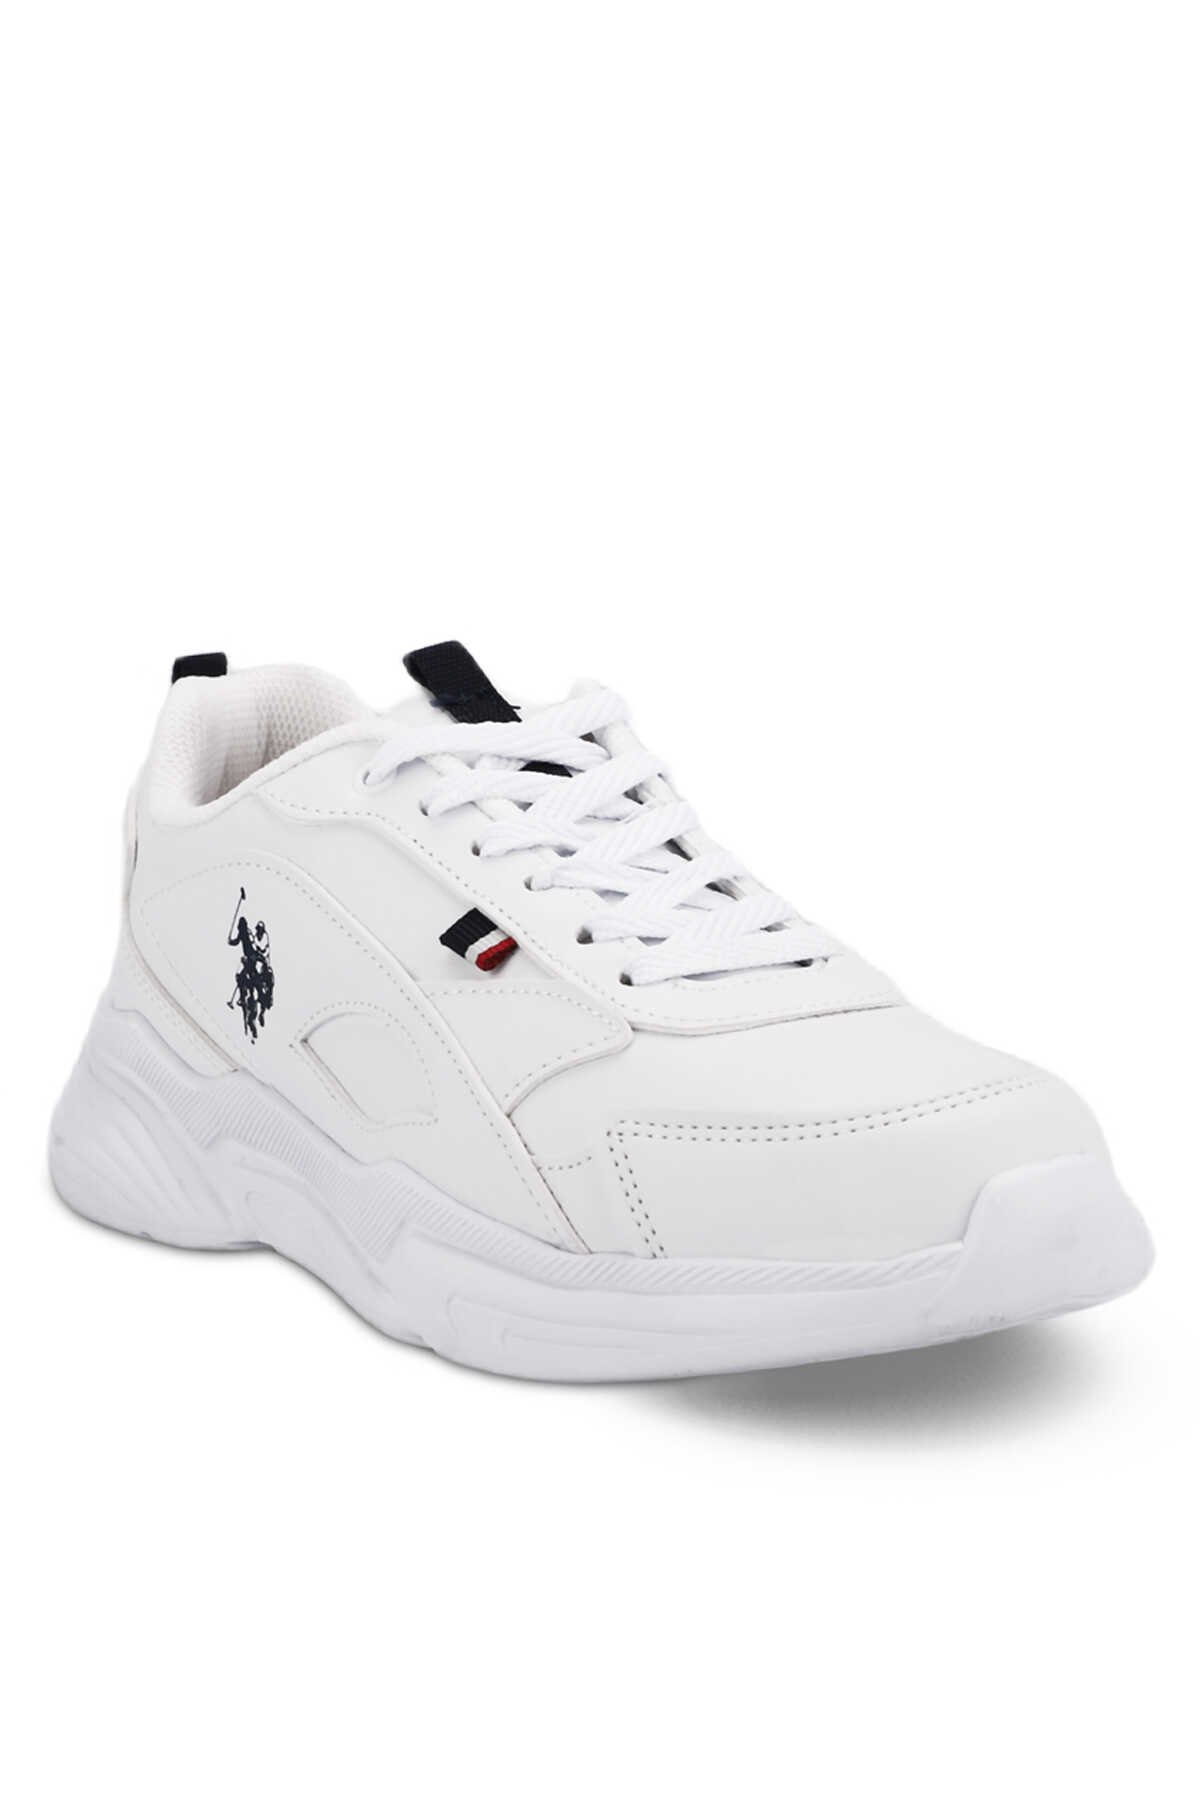 U.S. Polo Assn. - U.S. Polo Assn. LEMON 3PR Sneaker Kadın Ayakkabı Beyaz